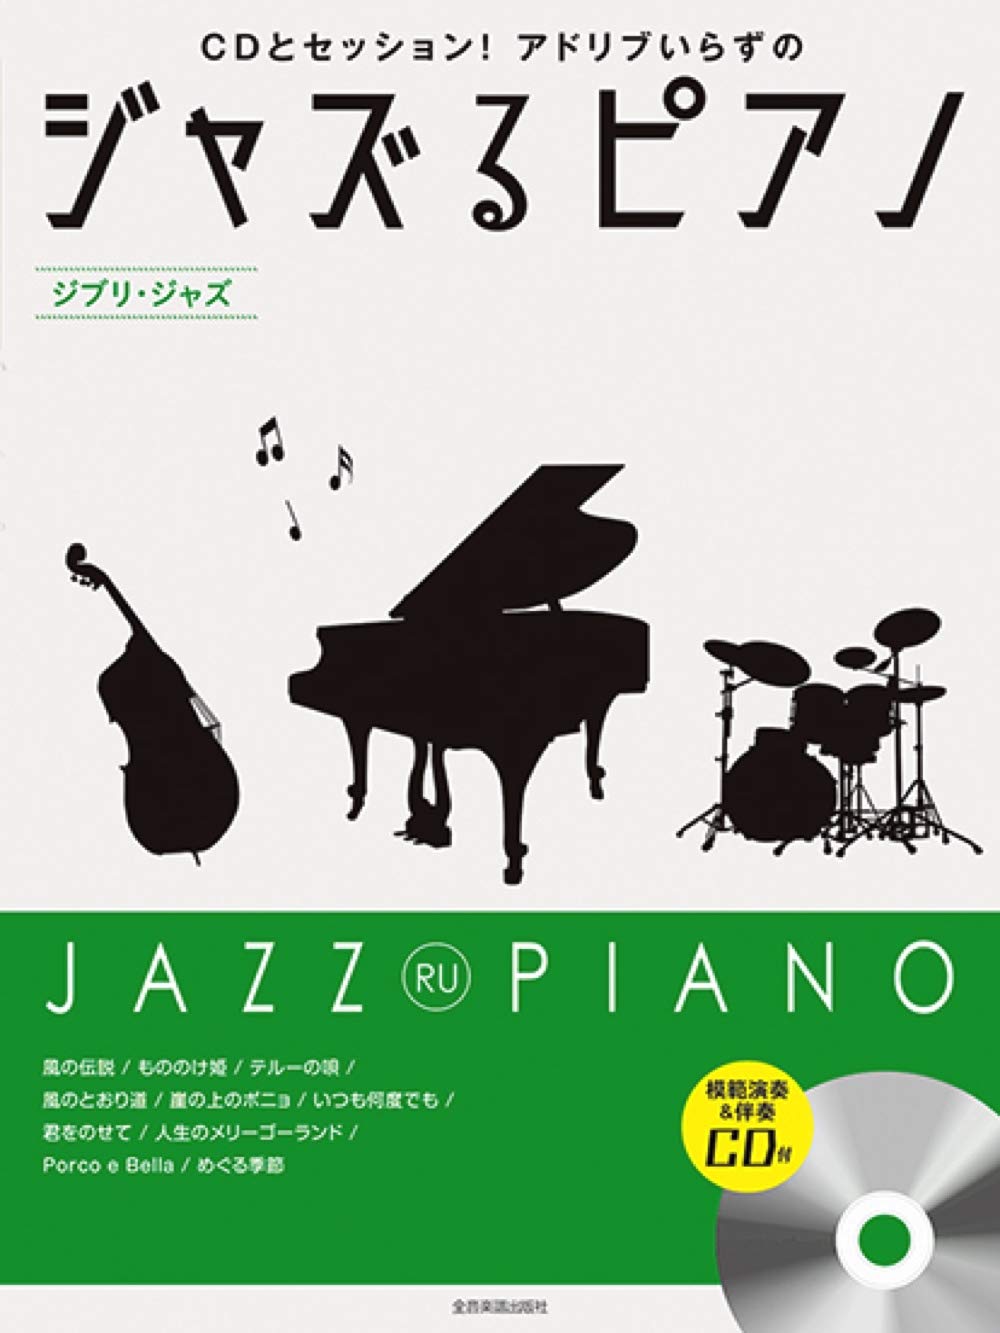 JAZZ RU PIANO - Studio Ghibli Jazz arrangement - Jazz Piano Torio w/CD